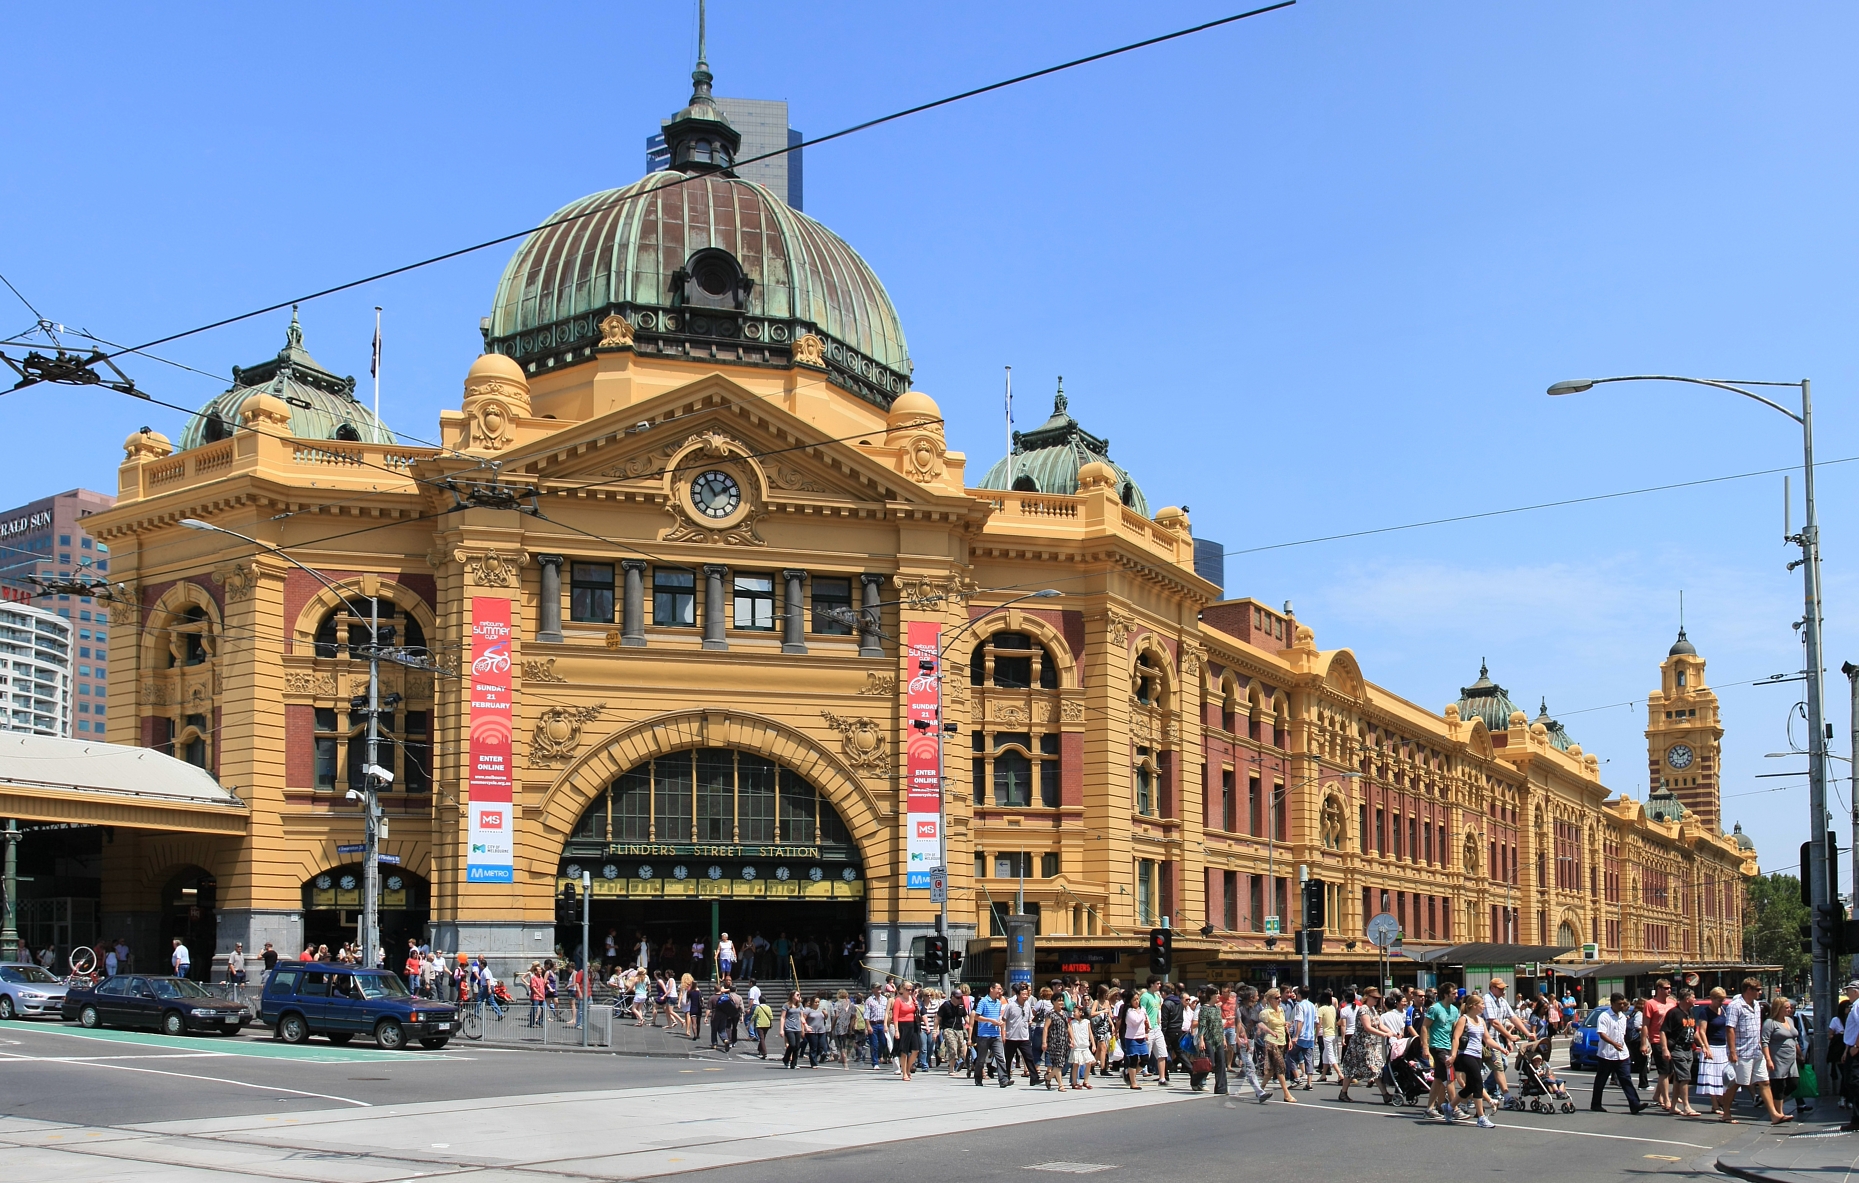 Flinders St Station in Melbourne, Victoria, Australia